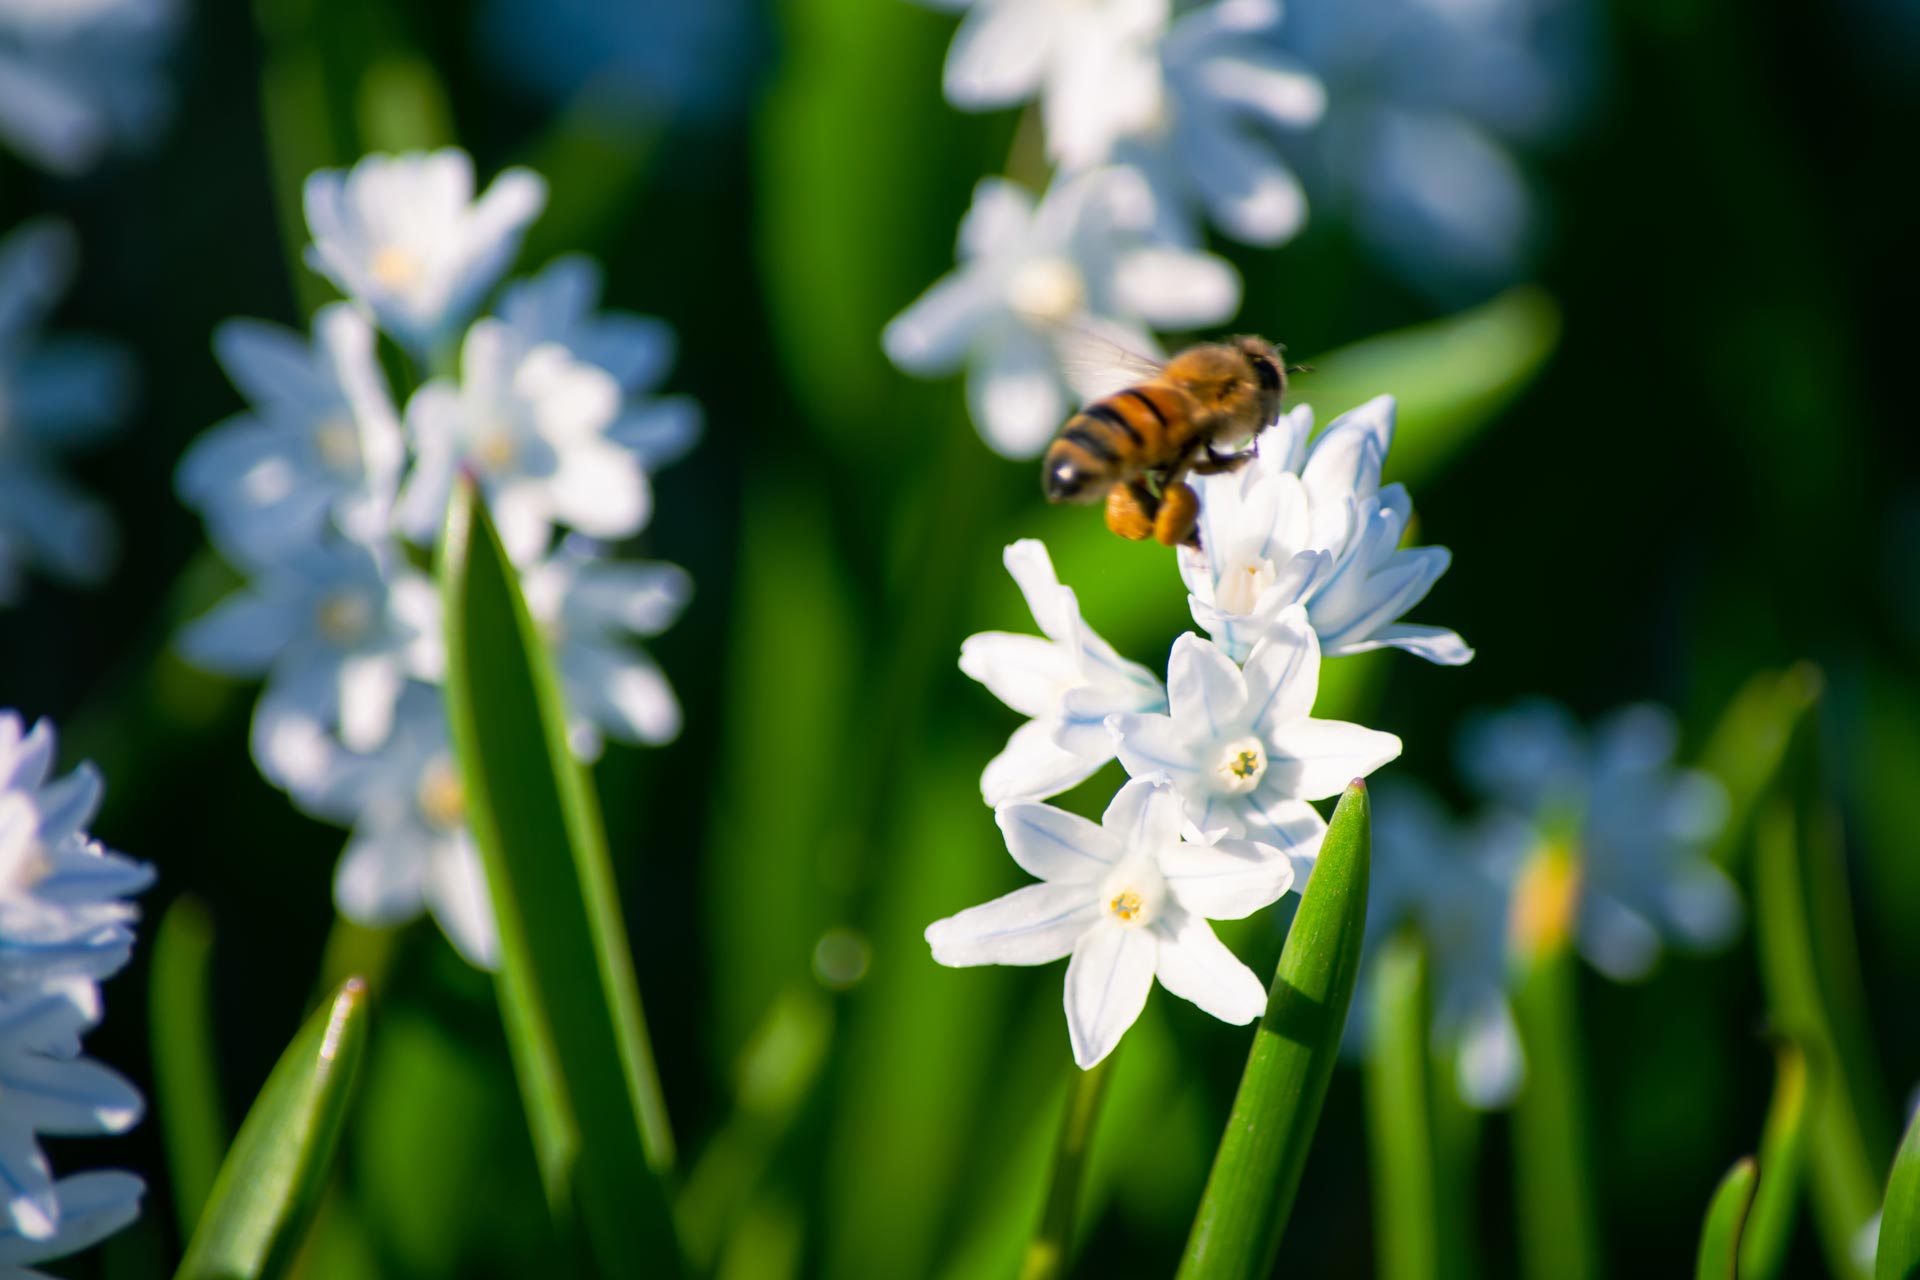 Un'ape appoggiata su narcisi in fiore.